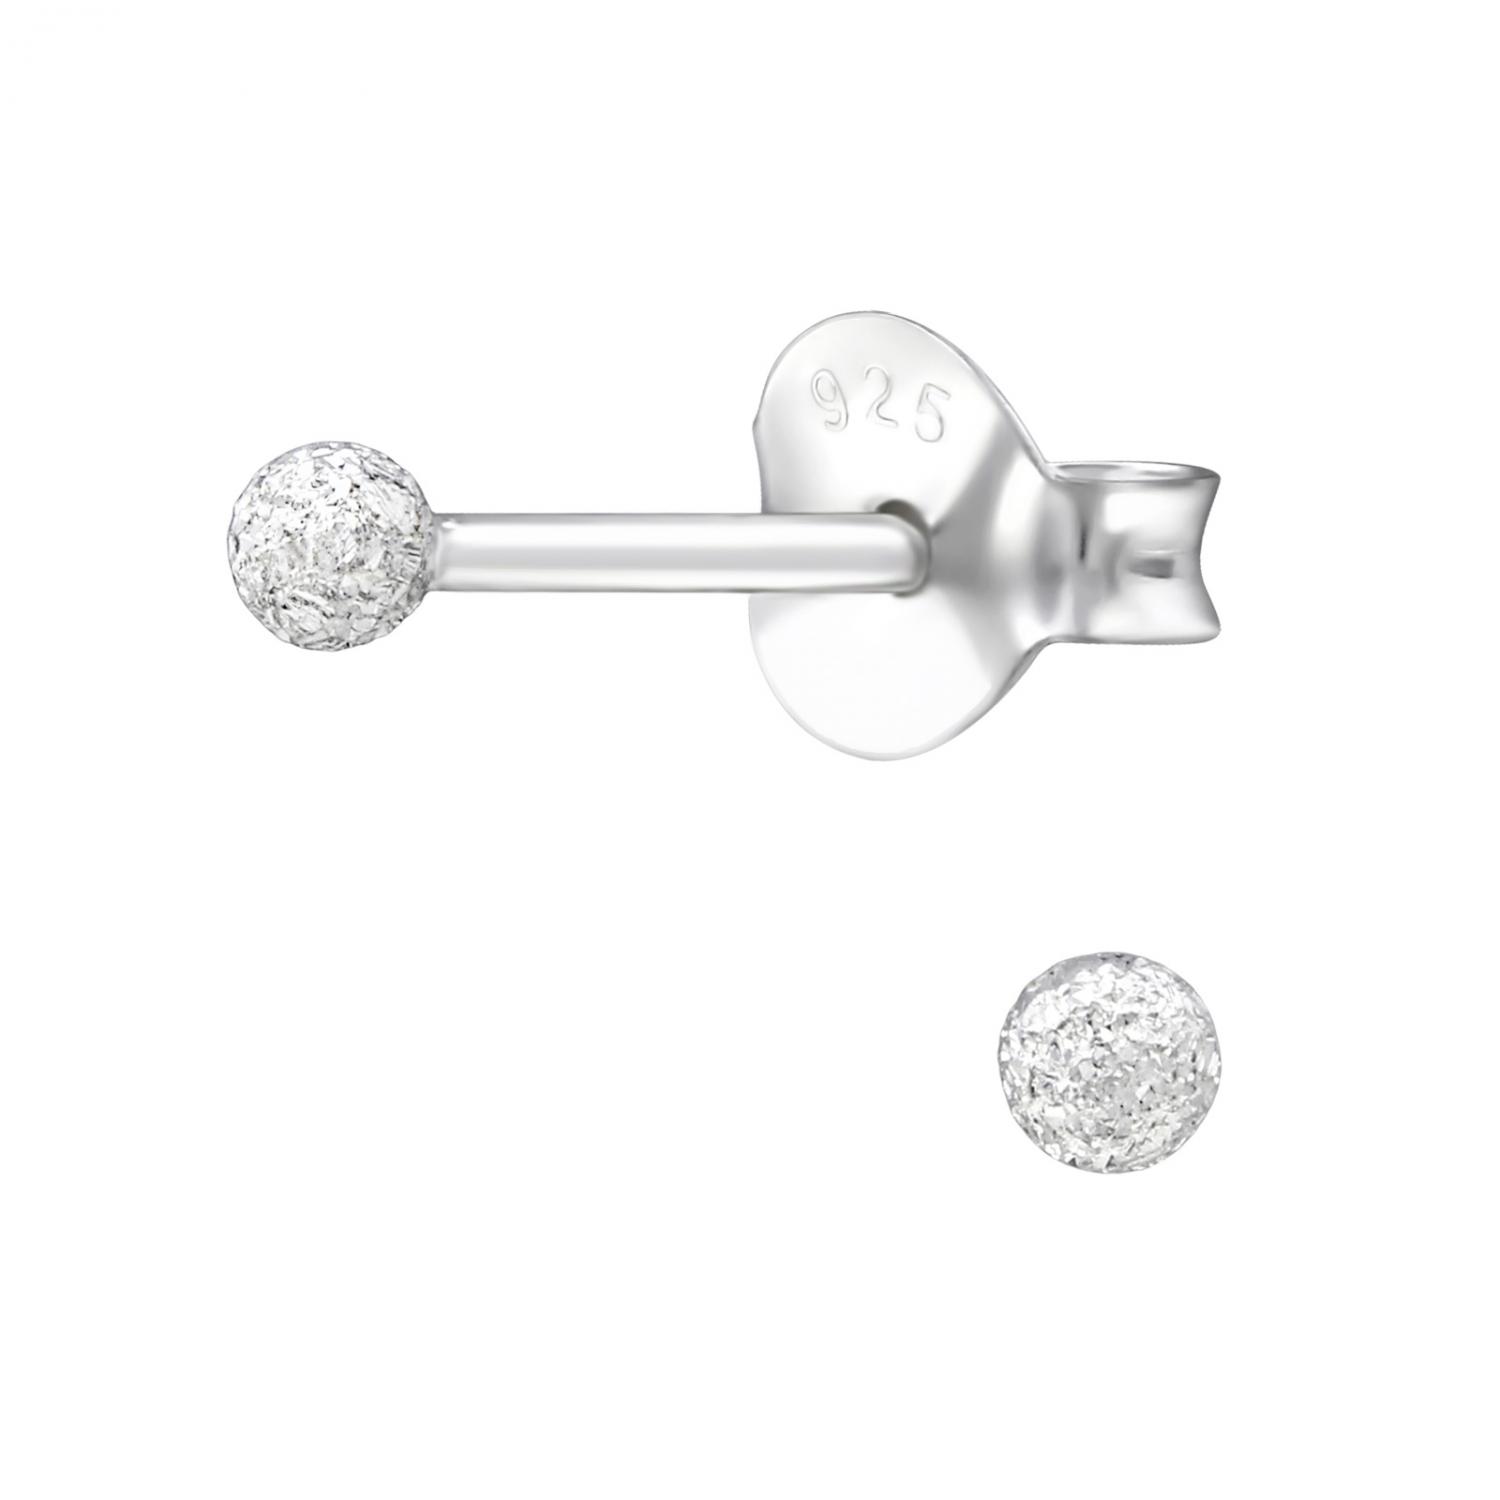 Kula 2 mm - Studs - Örhängen i äkta silver